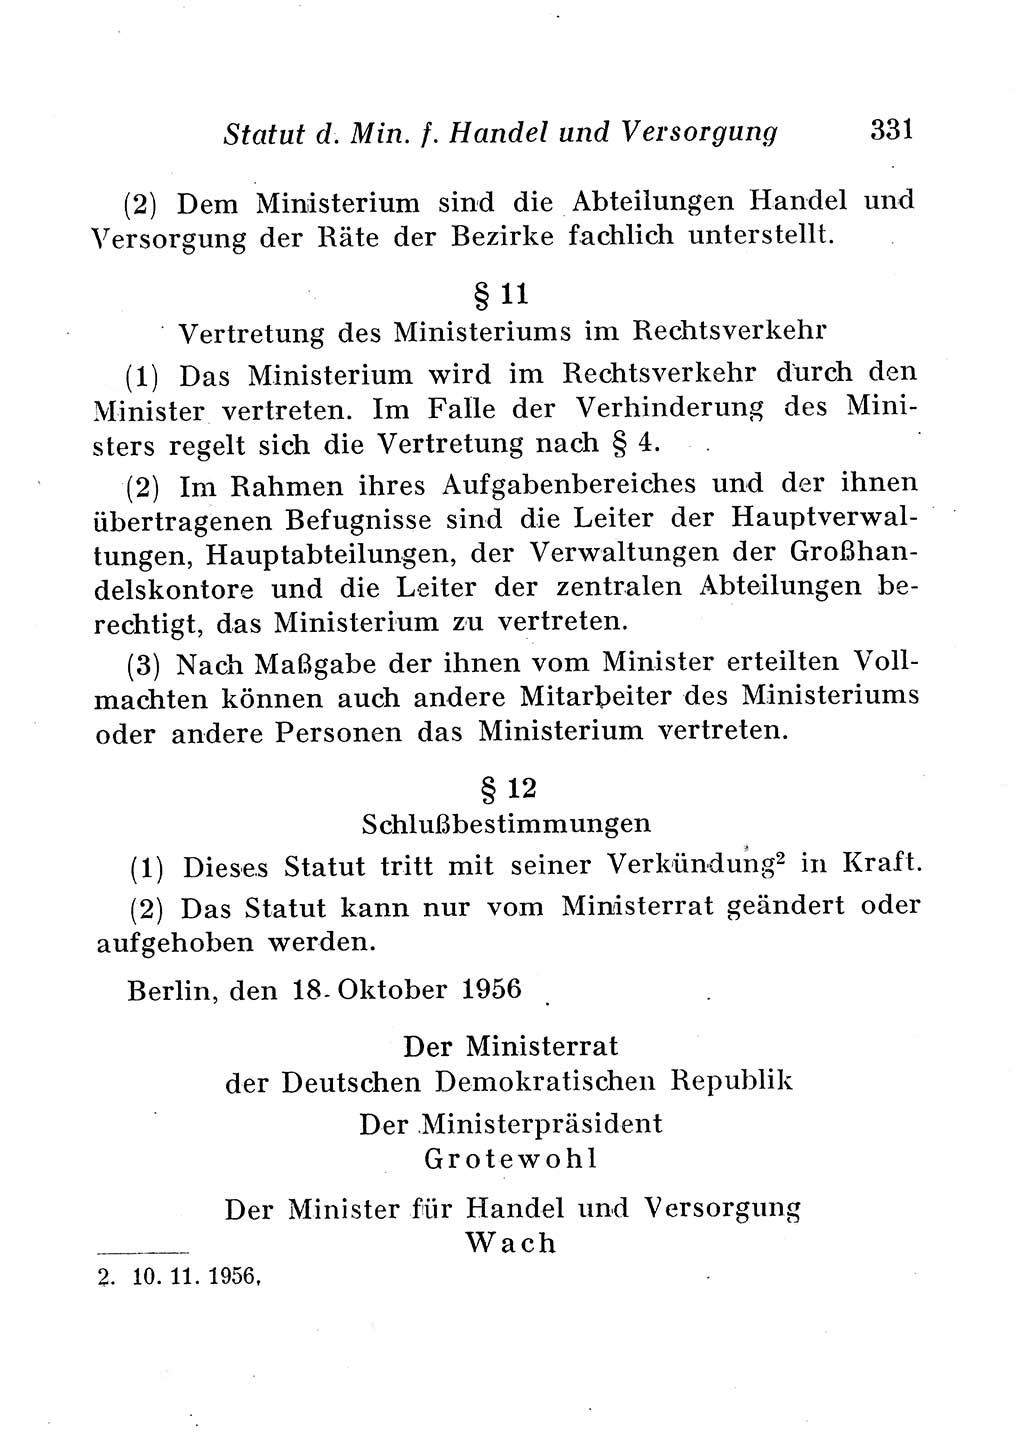 Staats- und verwaltungsrechtliche Gesetze der Deutschen Demokratischen Republik (DDR) 1958, Seite 331 (StVerwR Ges. DDR 1958, S. 331)